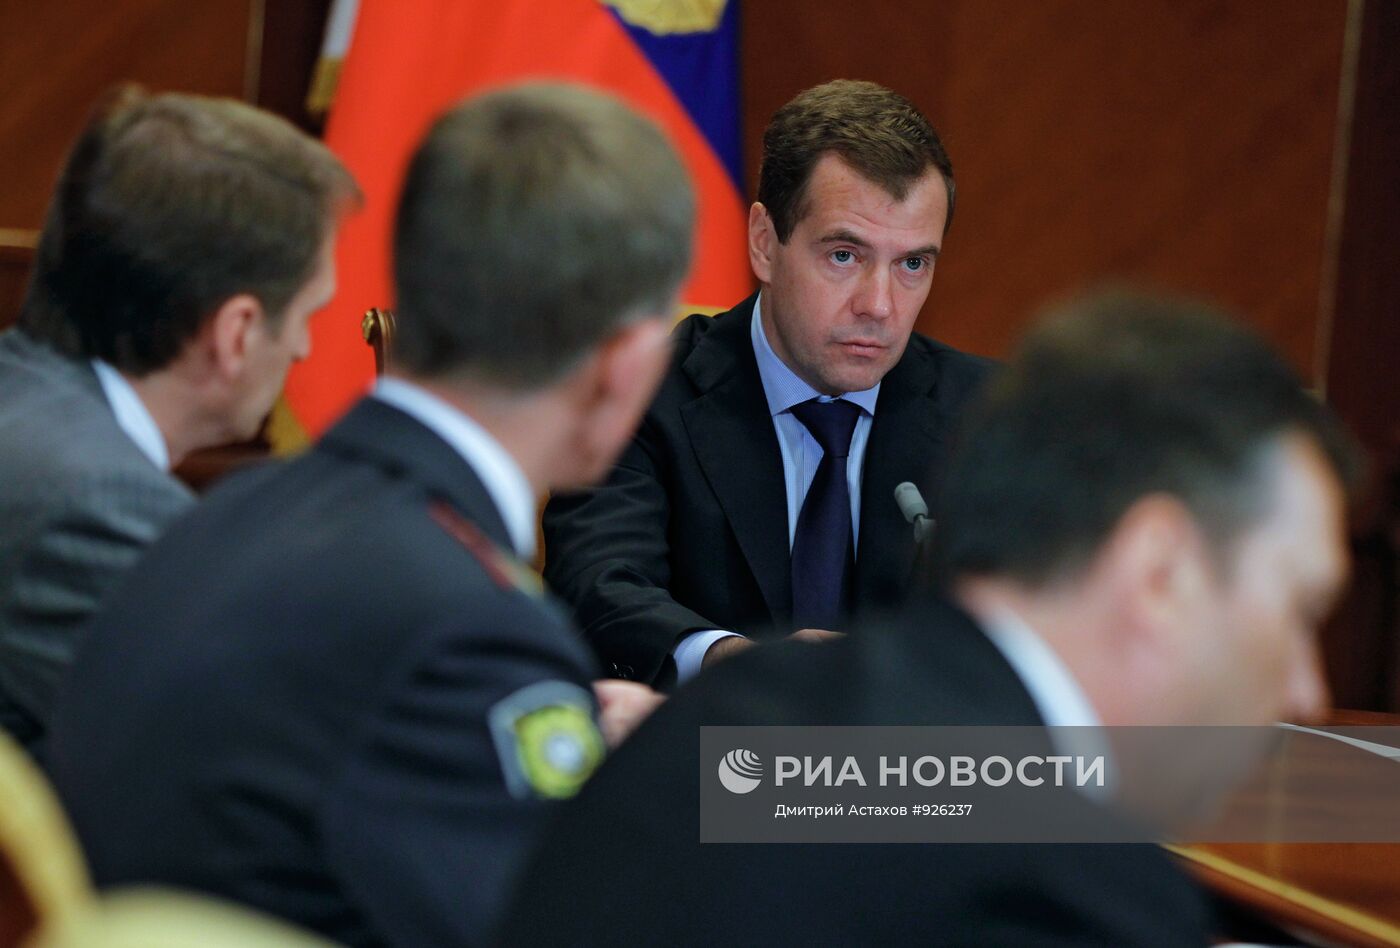 Д.Медведев провел совещание с руководством МВД РФ